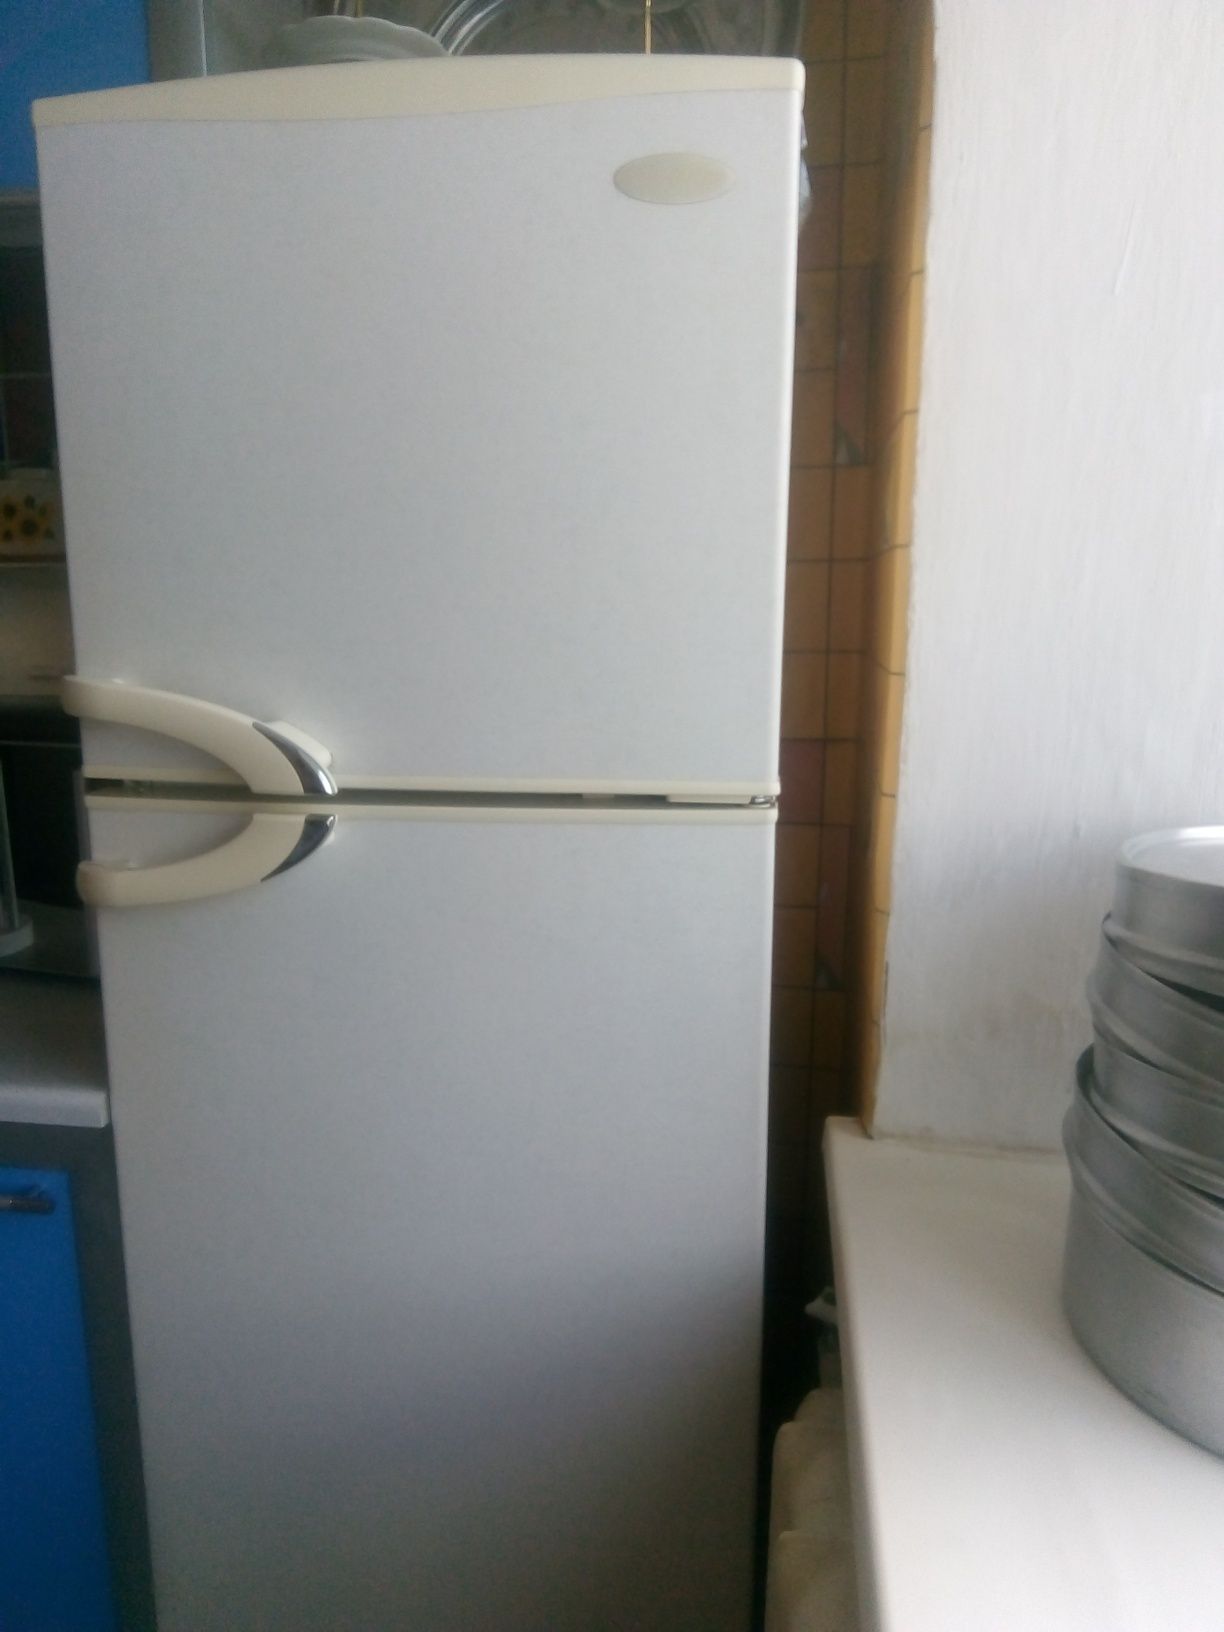 продается холодильник в нерабочем состоянии